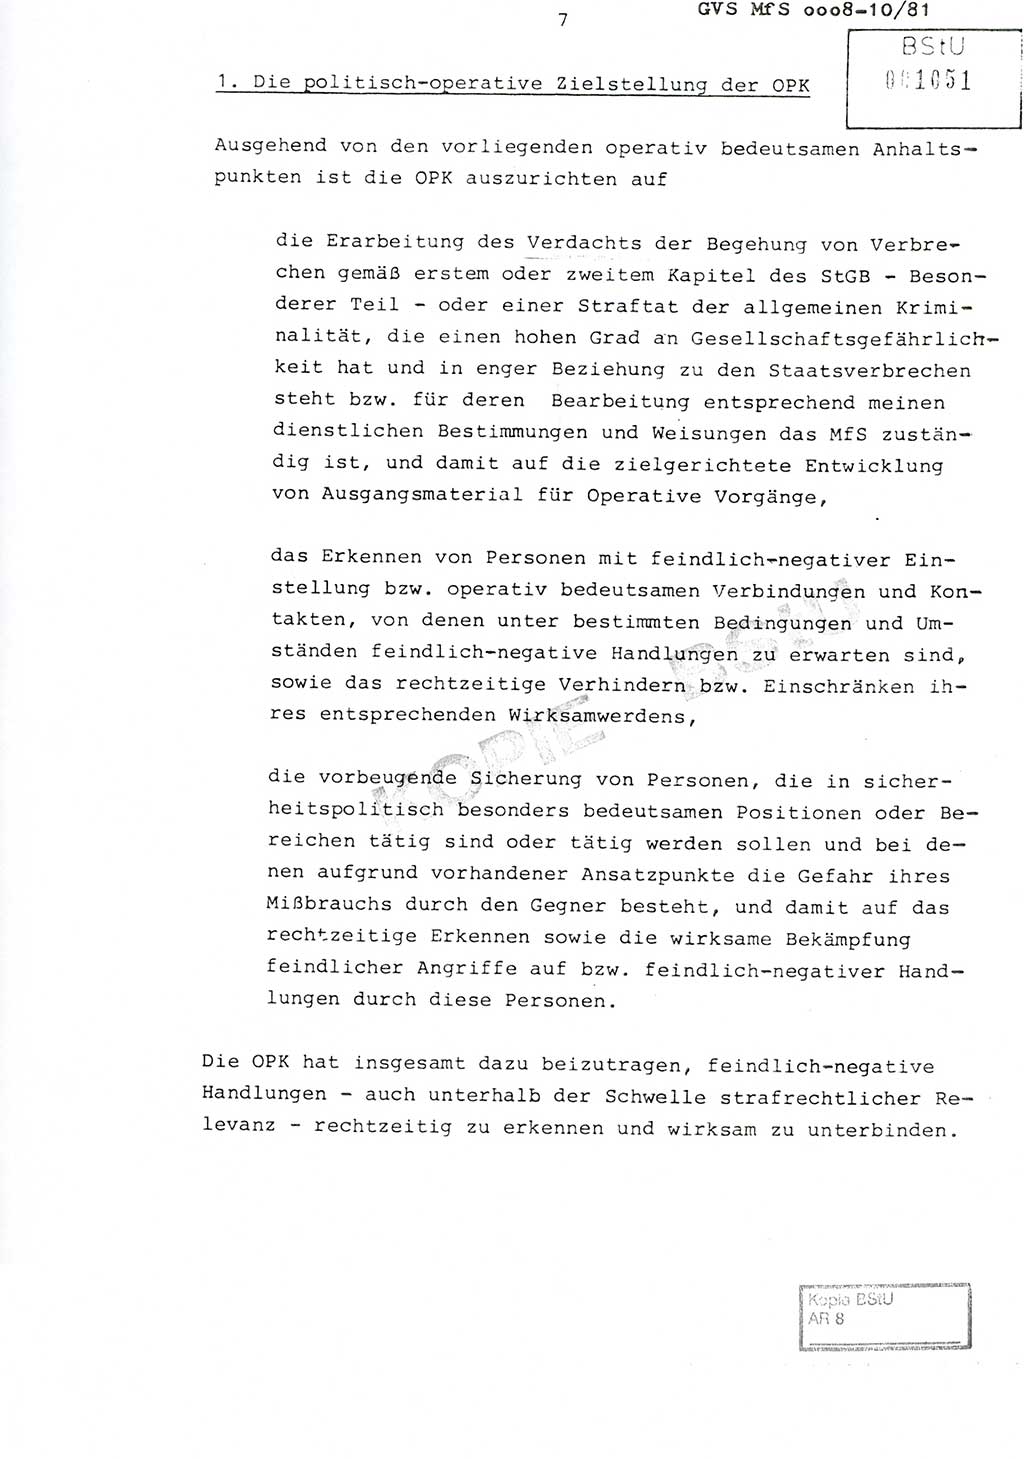 Richtlinie Nr. 1/81 über die operative Personenkontrolle (OPK), Ministerium für Staatssicherheit (MfS) [Deutsche Demokratische Republik (DDR)], Der Minister, Geheime Verschlußsache (GVS) ooo8-10/81, Berlin 1981, Blatt 7 (RL 1/81 OPK DDR MfS Min. GVS ooo8-10/81 1981, Bl. 7)